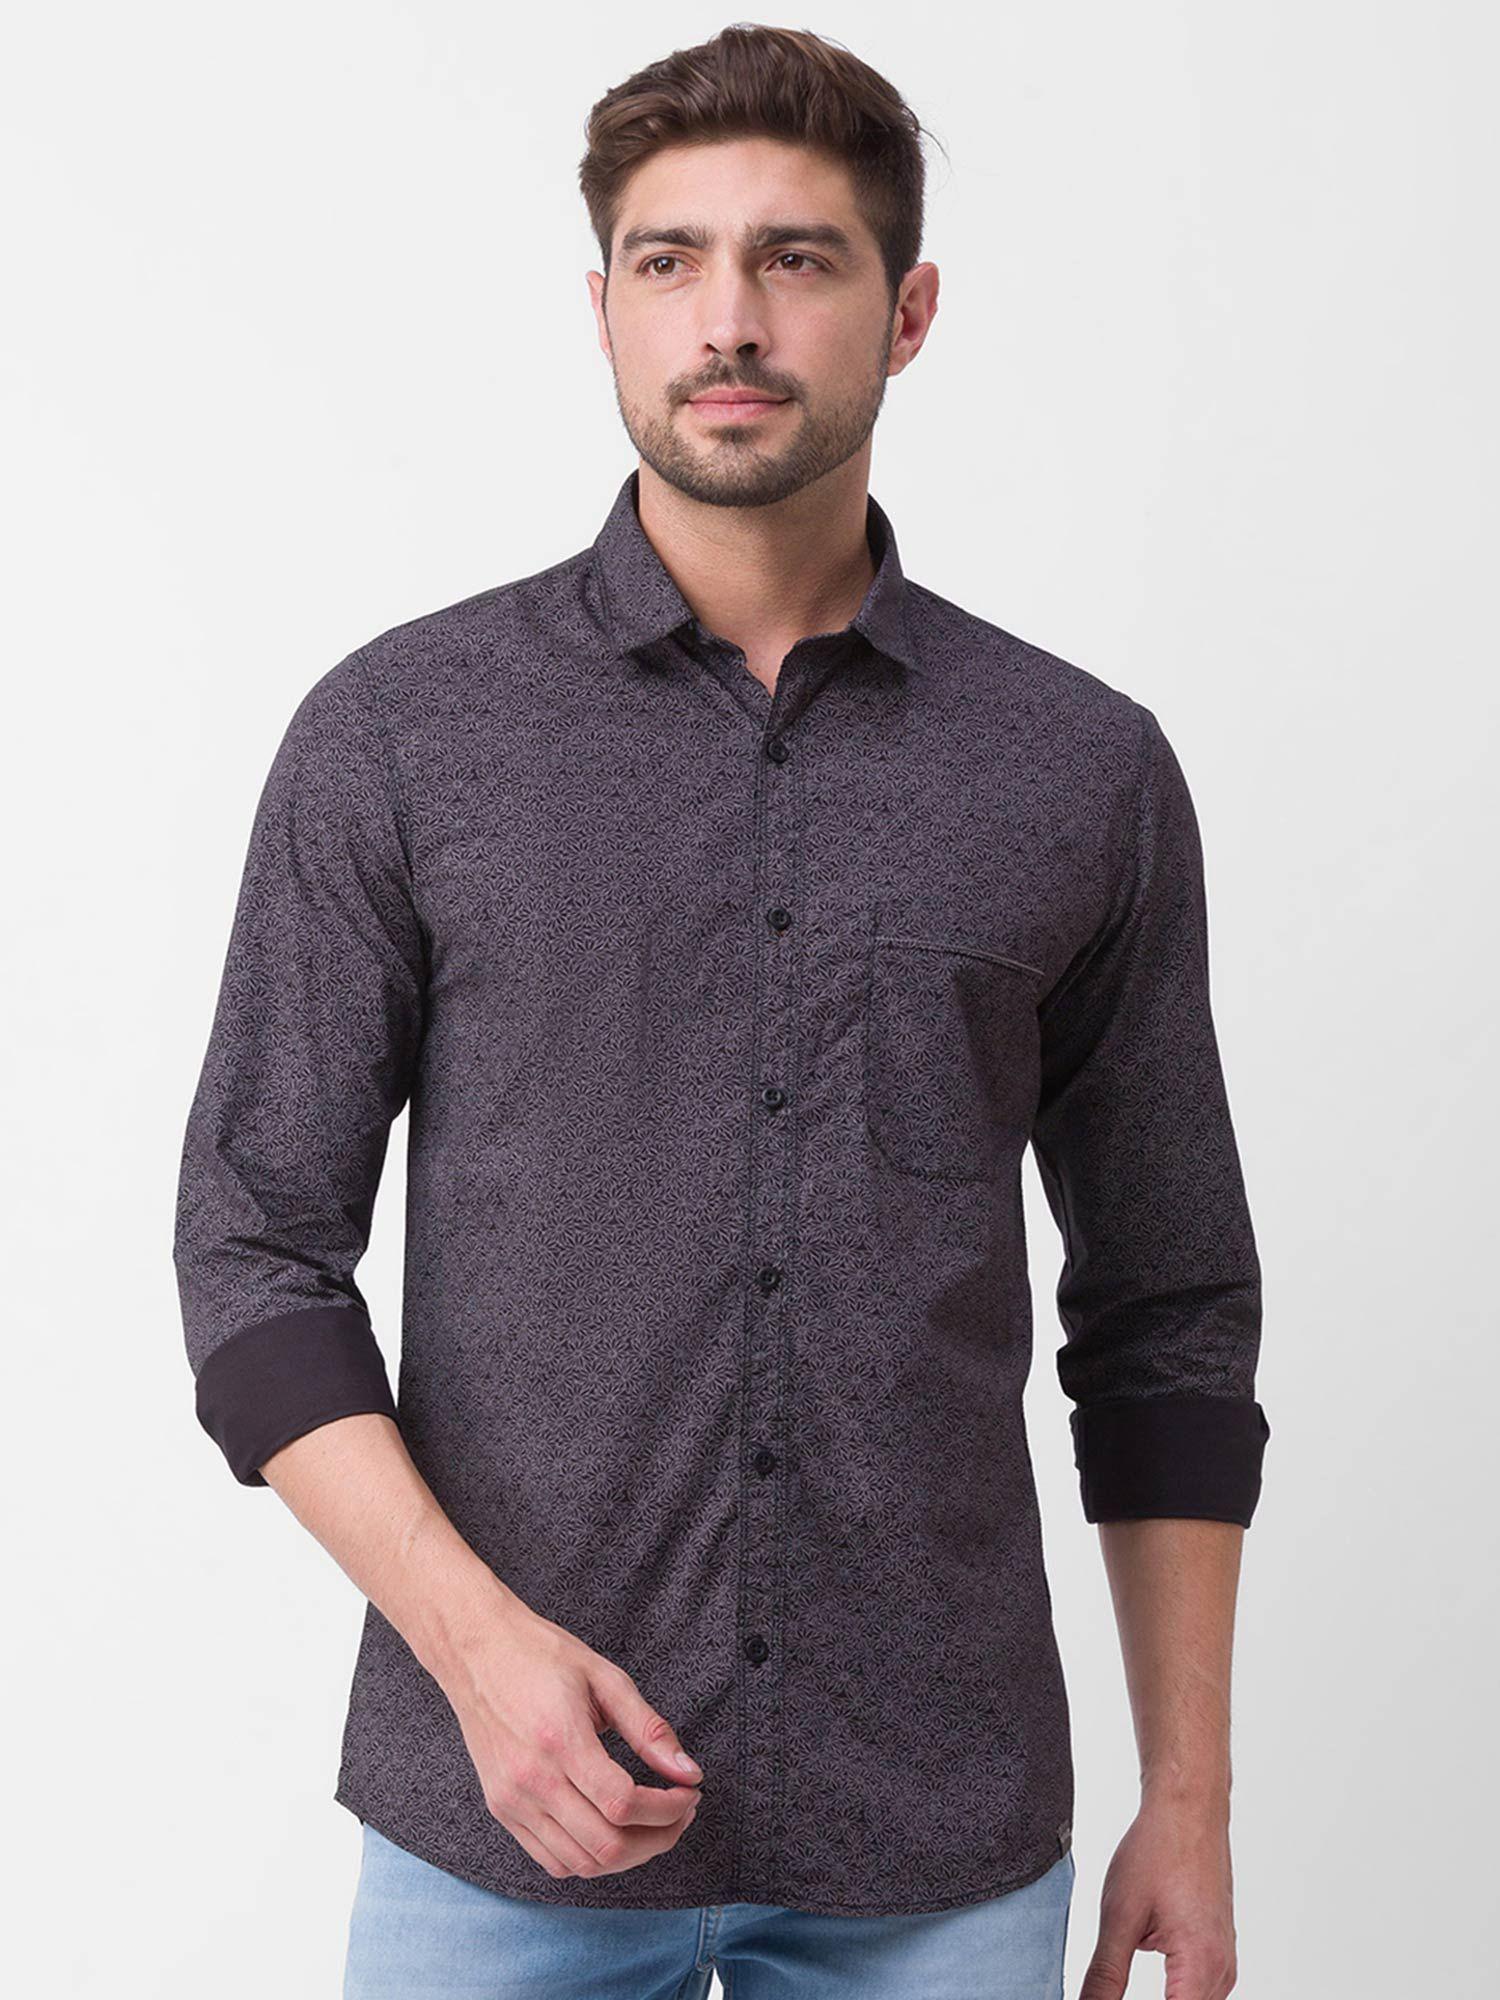 Black Cotton Full Sleeve Printed Shirt for Men